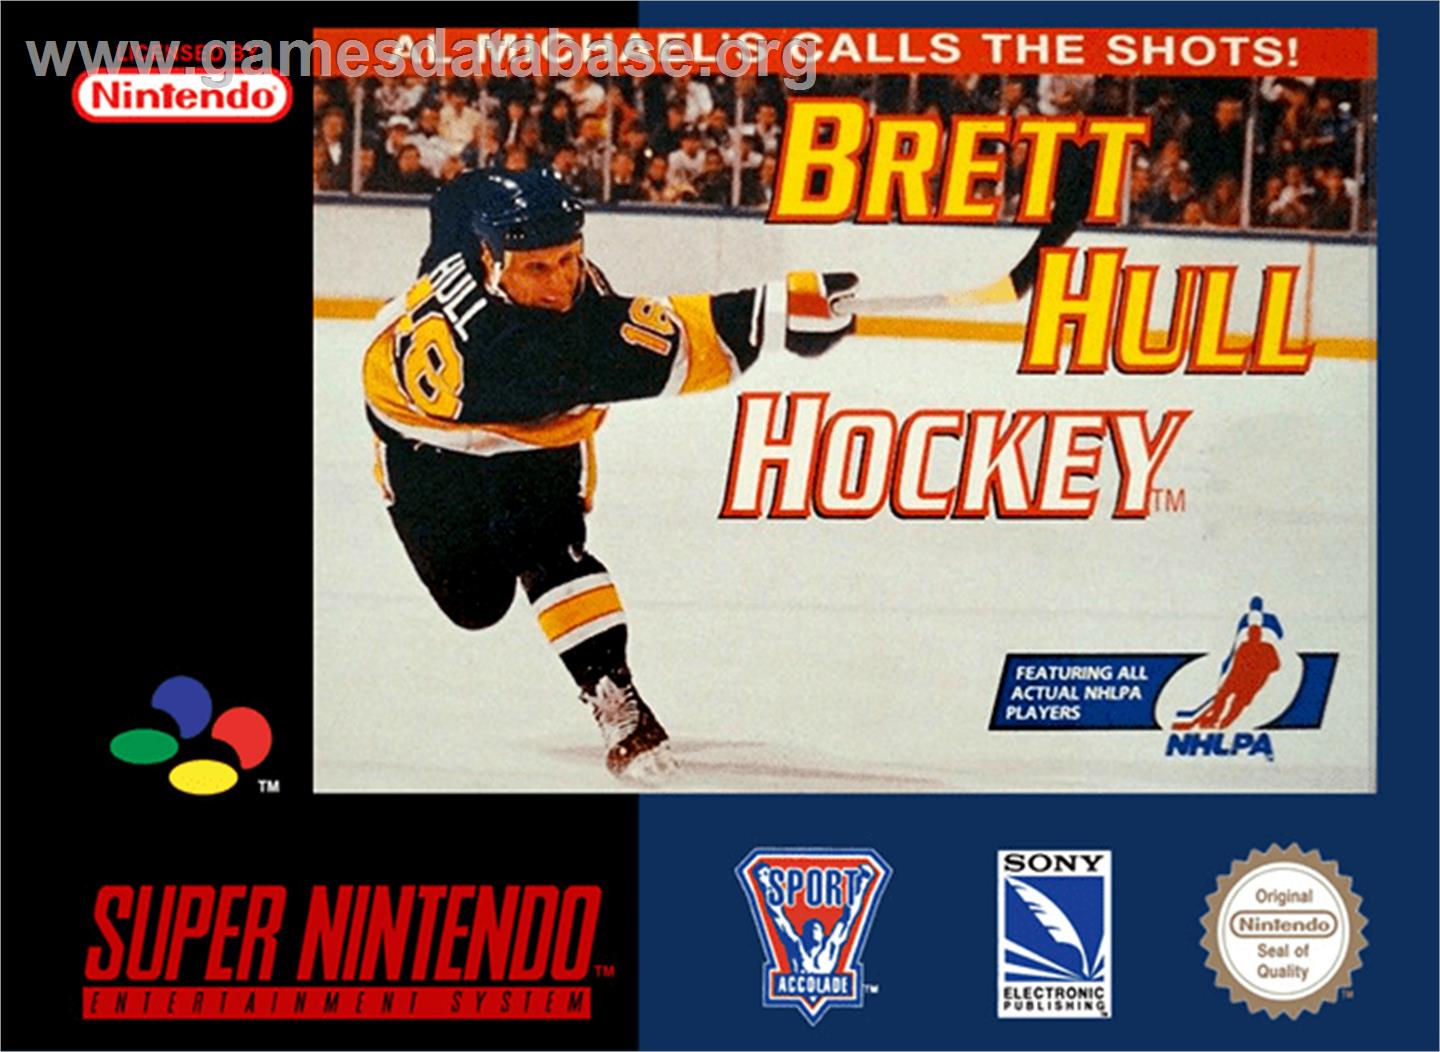 Brett Hull Hockey - Nintendo SNES - Artwork - Box